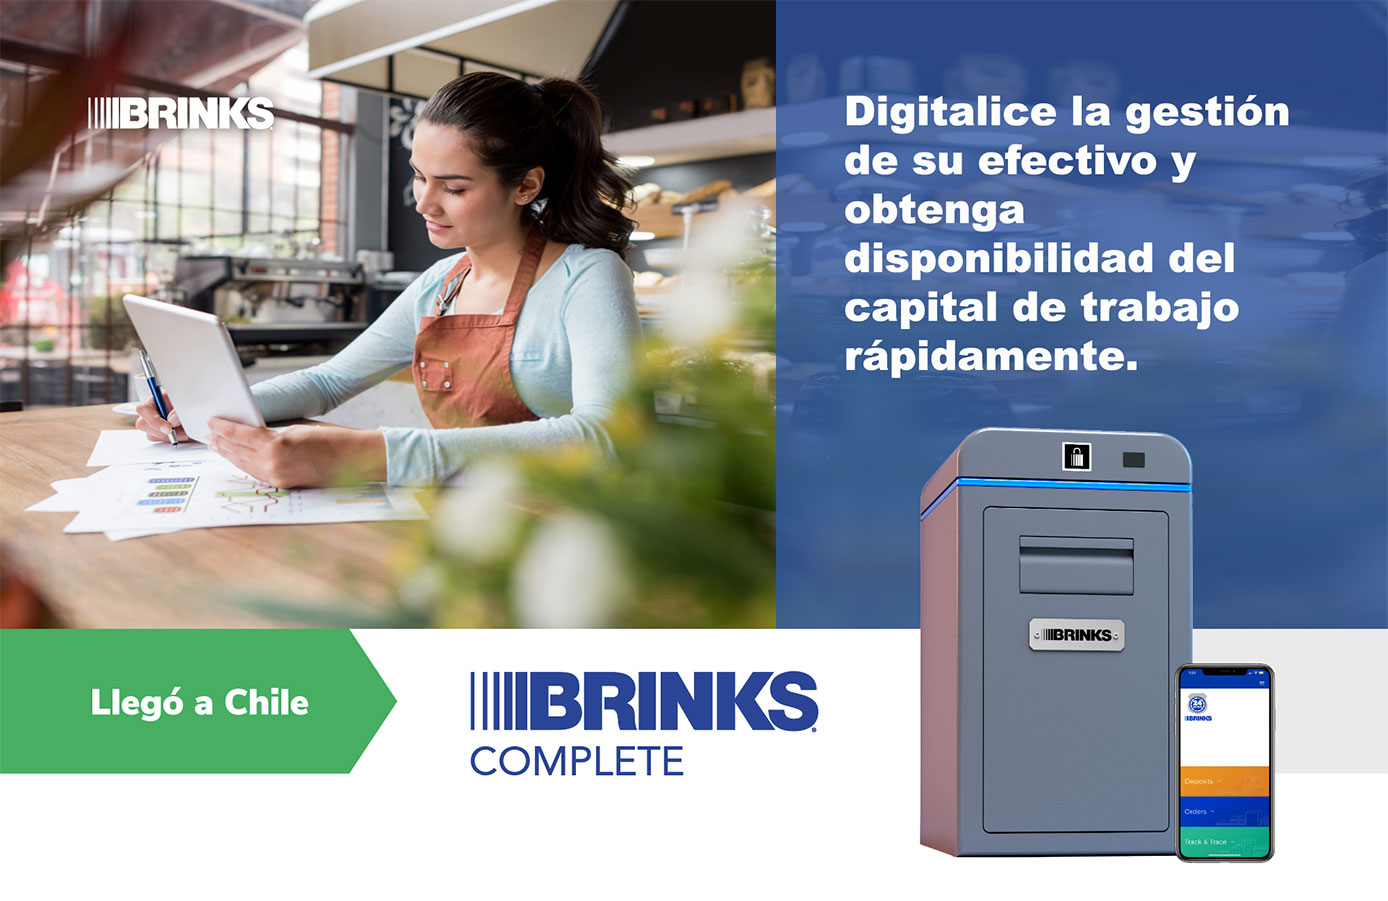 La solución llamada Brink’s Complete permite instalar una caja inteligente en la trastienda del local del cliente para depositar y digitalizar el efectivo